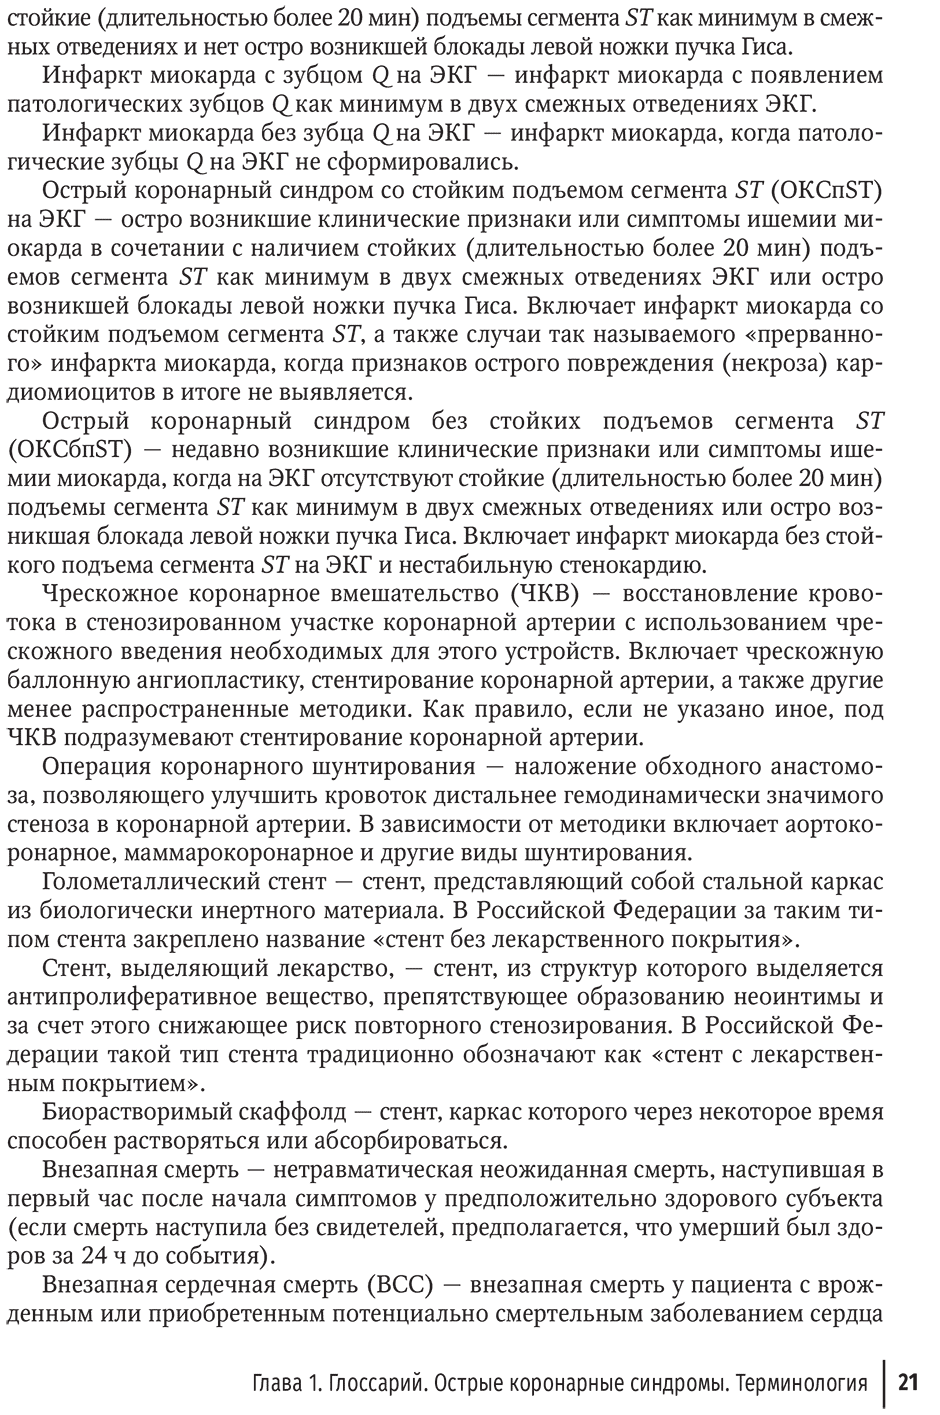 Пример страницы из книги "Острый коронарный синдром" - И. С. Явелова